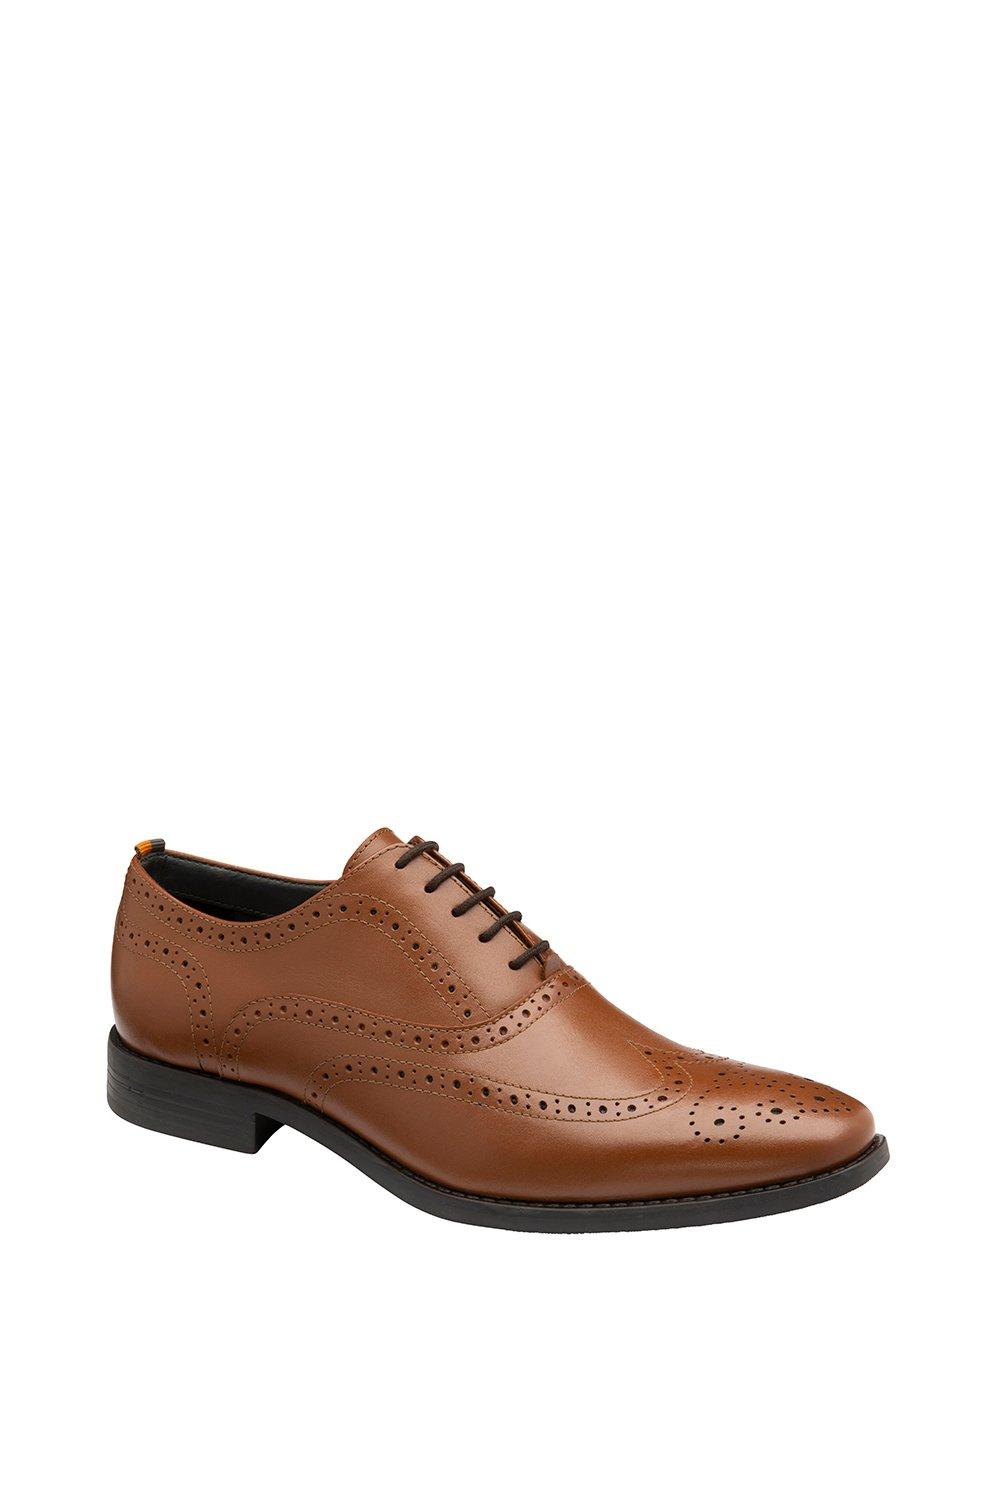 цена Кожаные туфли-броги Chatsworth Frank Wright, коричневый